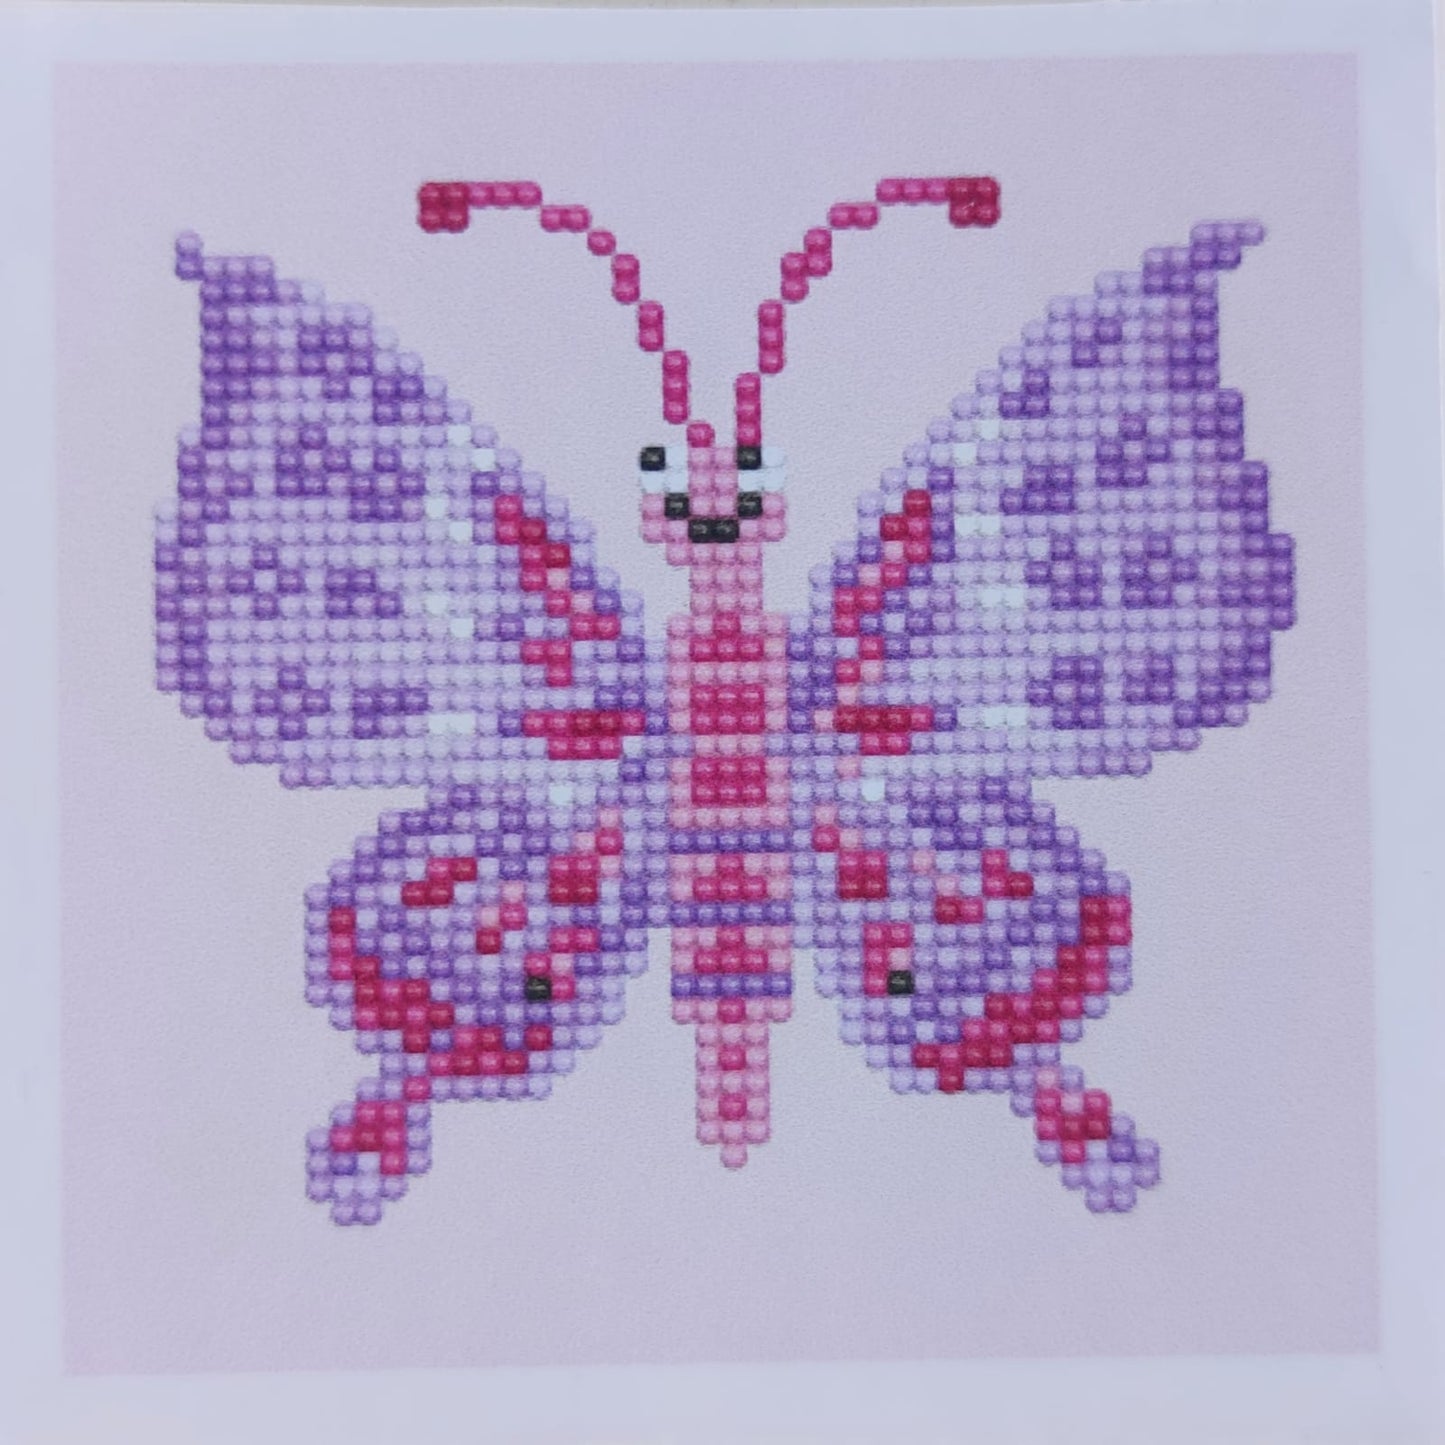 Kit Pinta con Diamantes 20x20 cm - mariposa